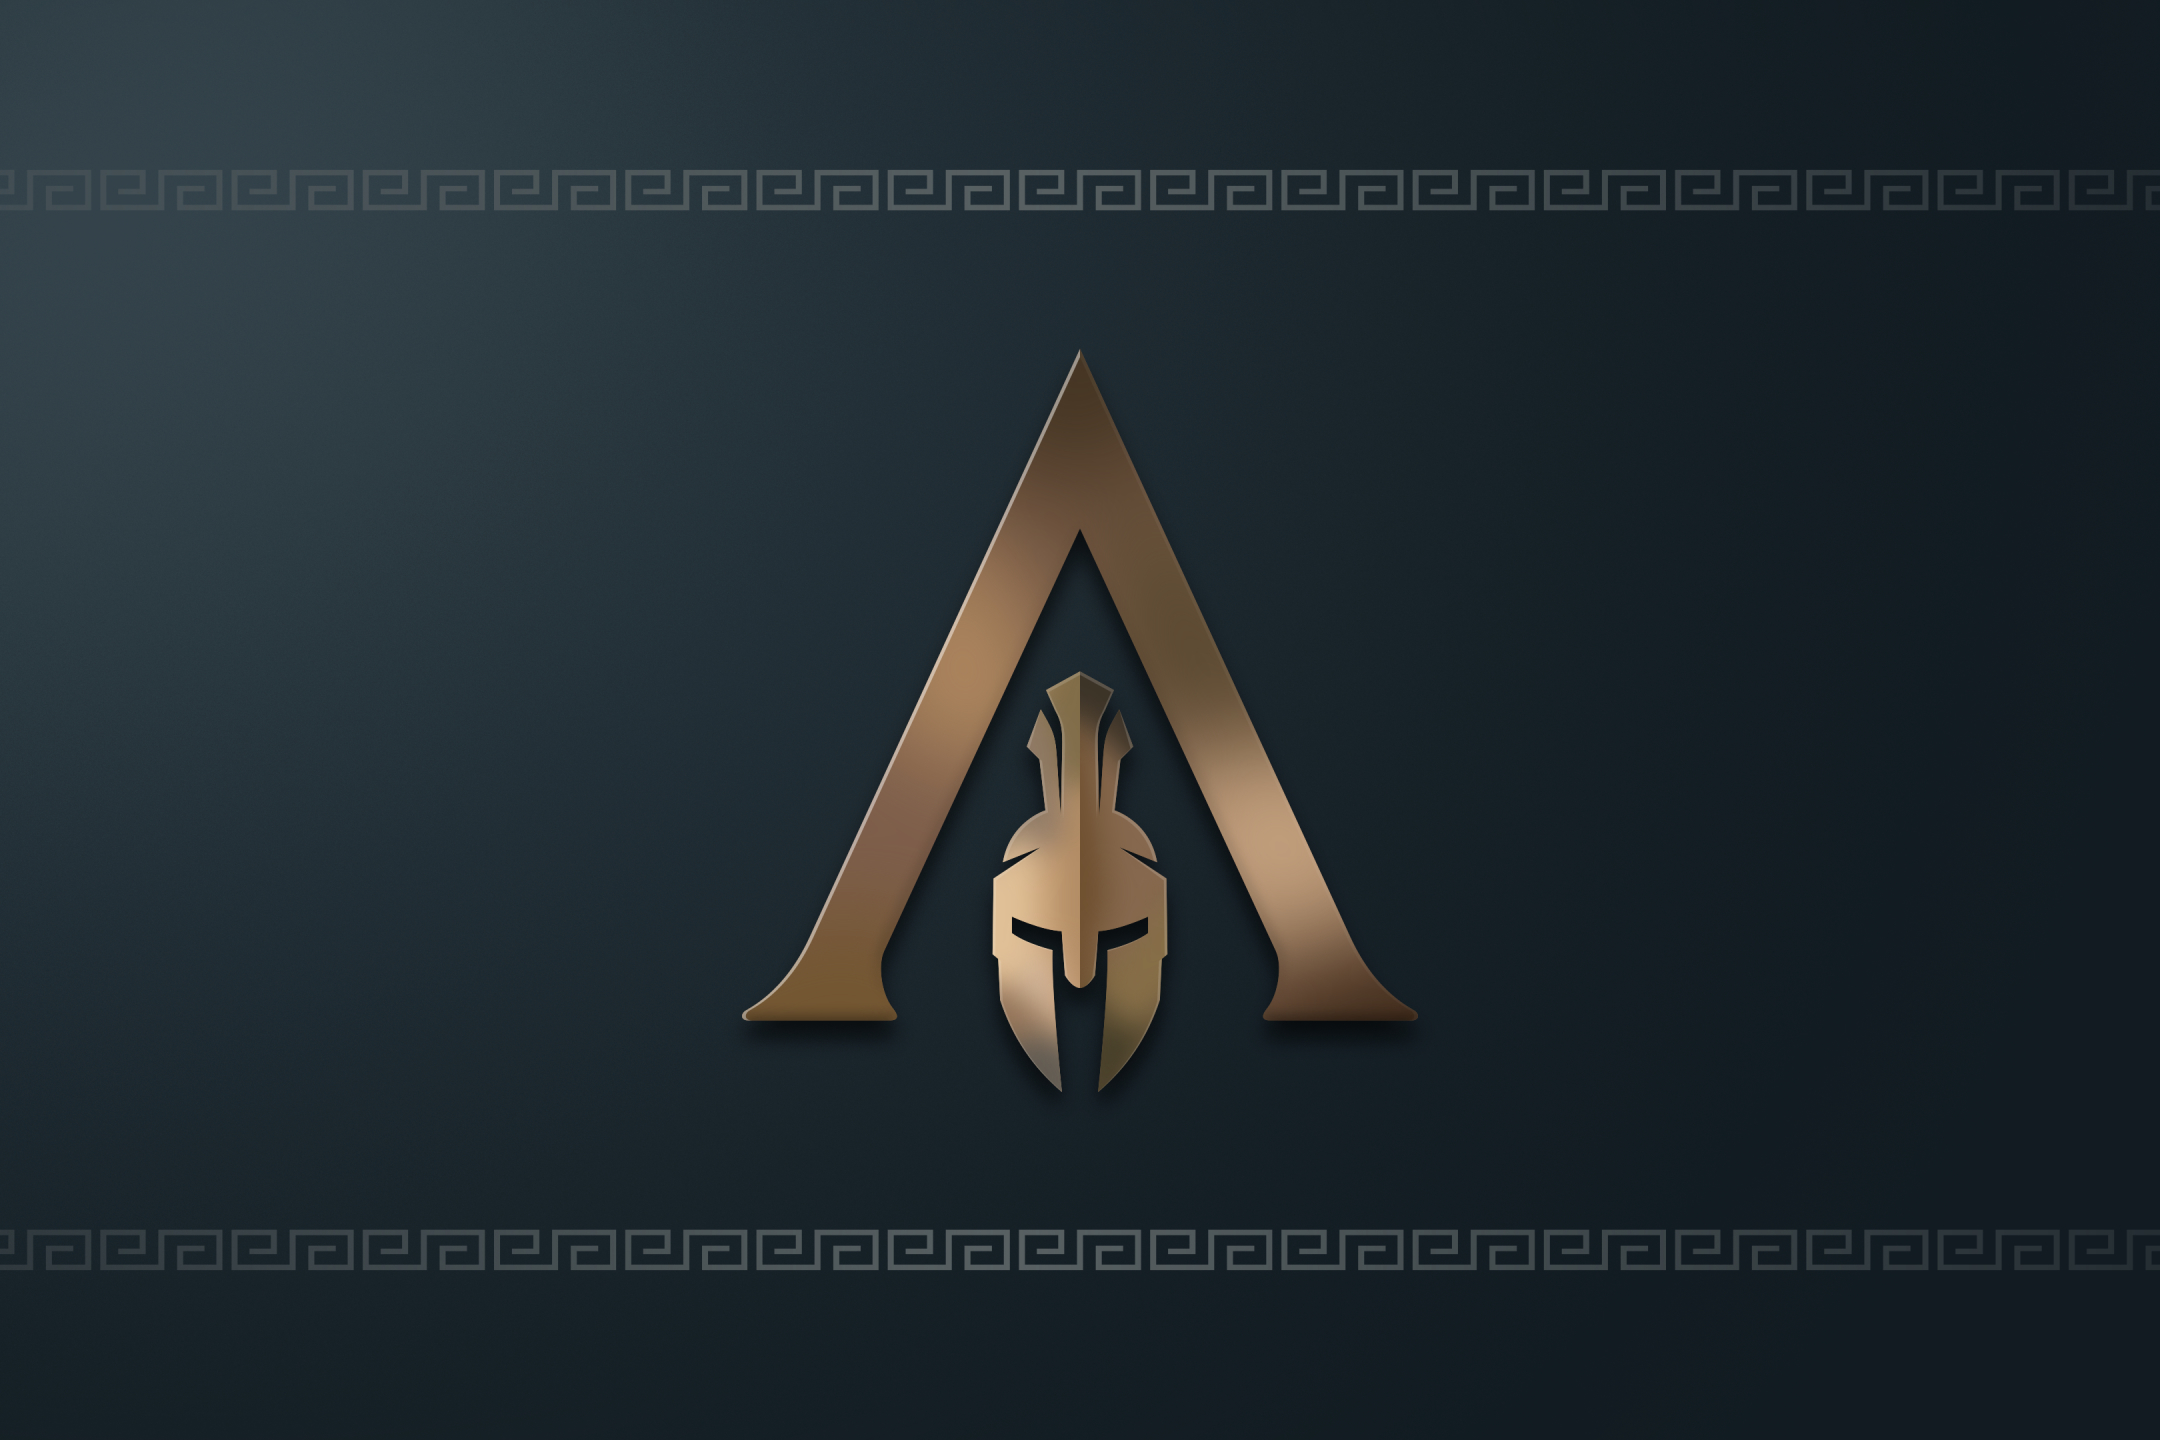 Скачать обои бесплатно Видеоигры, Спартанский, Кредо Ассасина, Assassin's Creed: Одиссея картинка на рабочий стол ПК